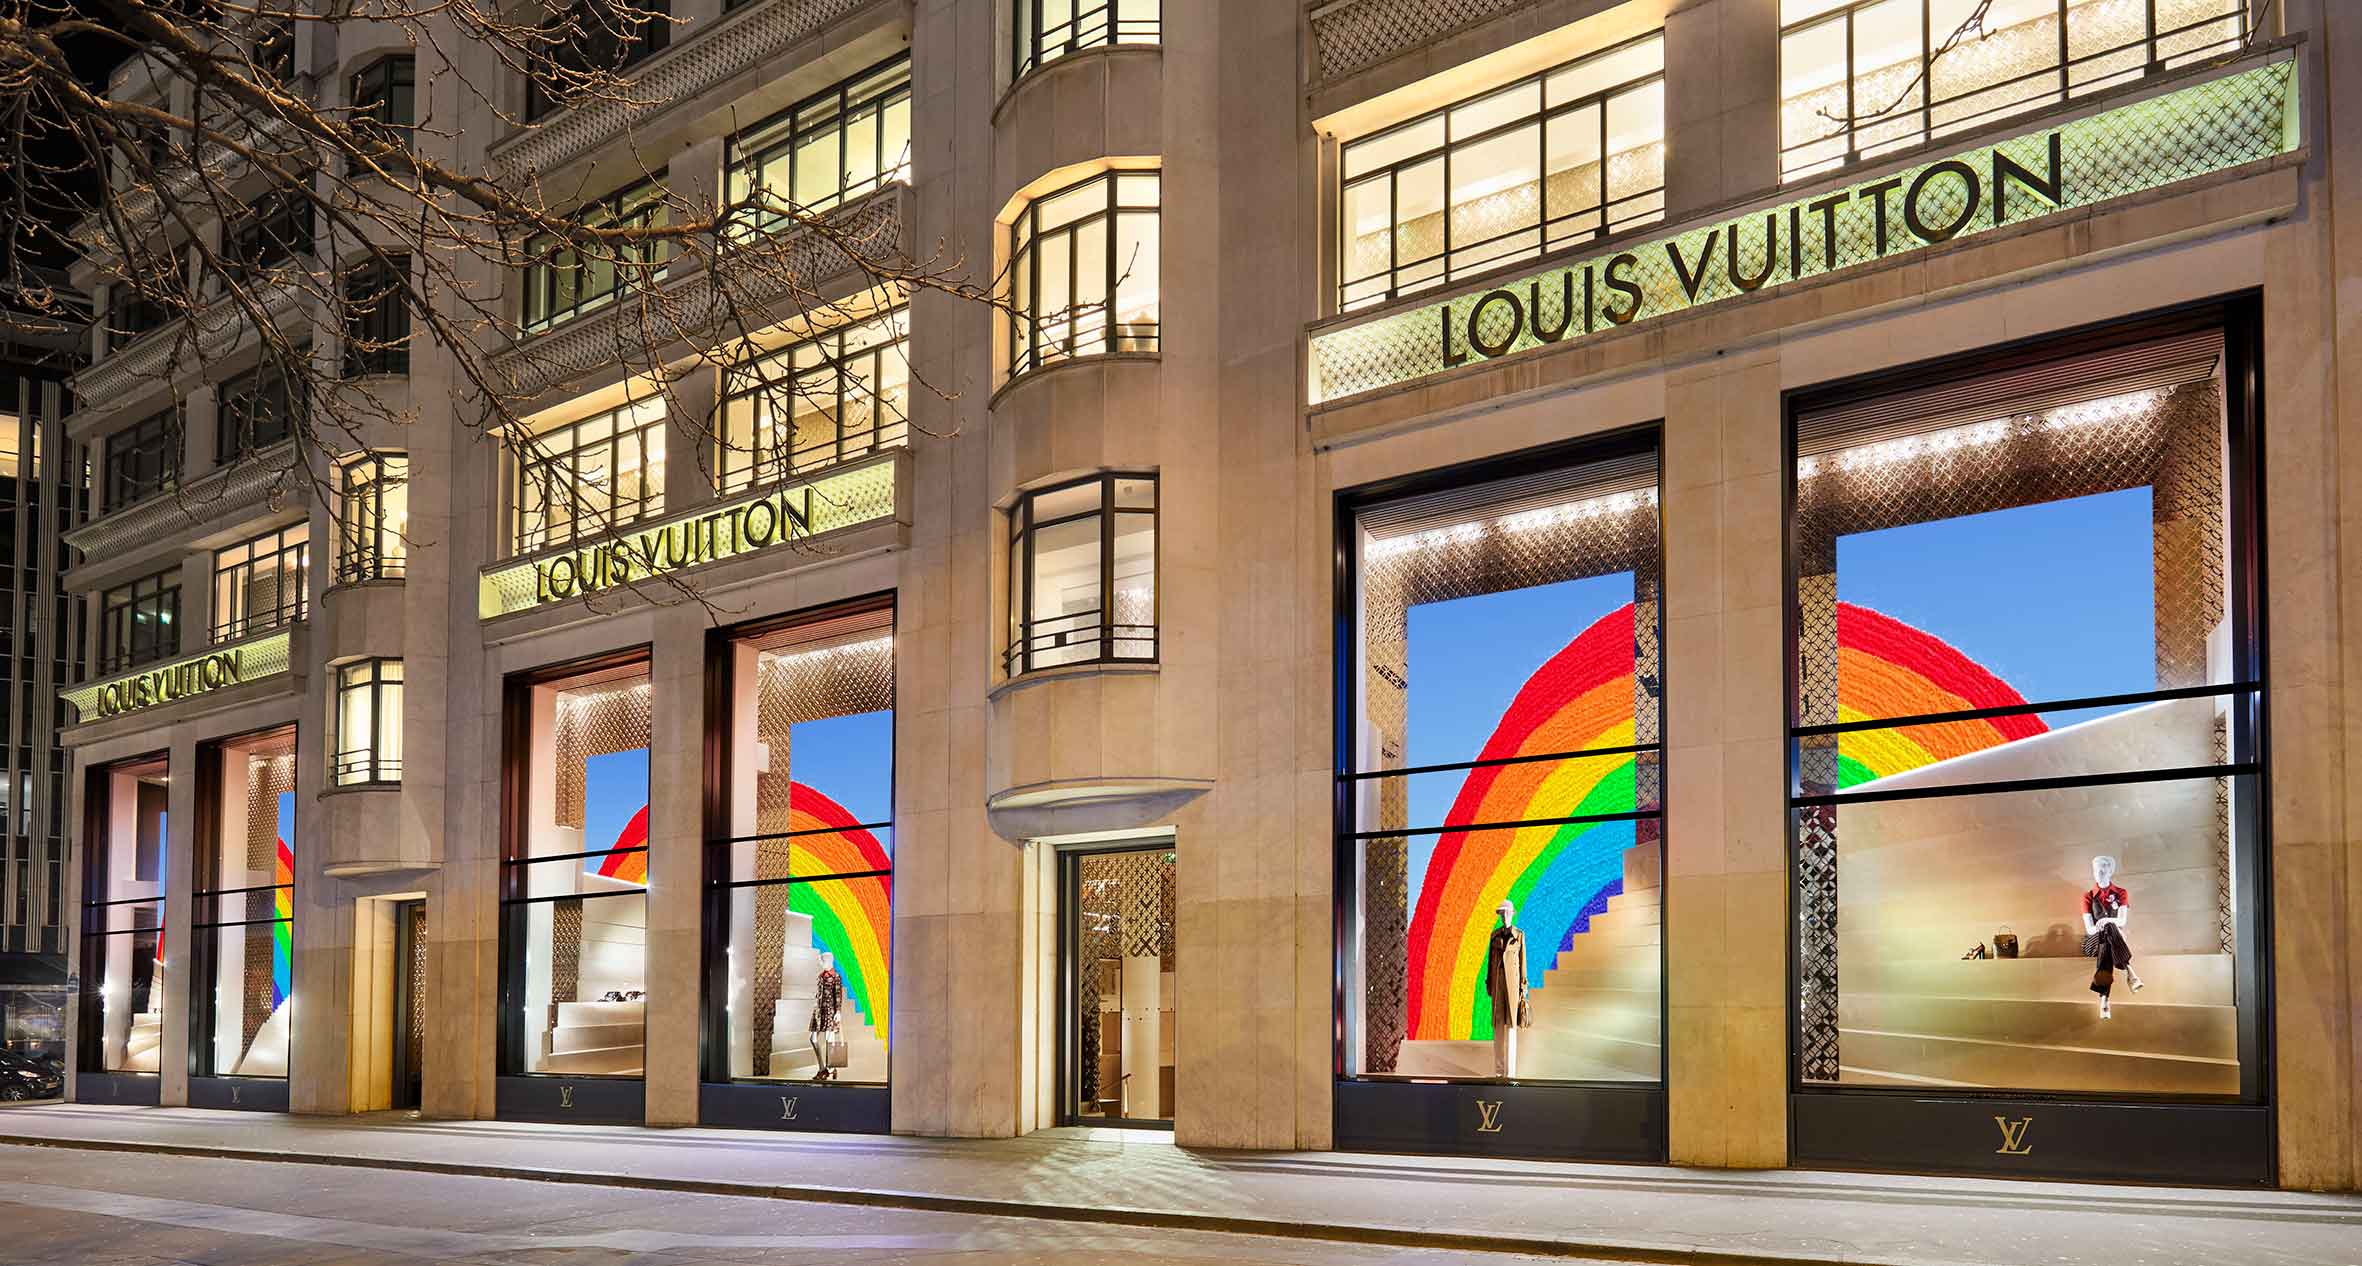 The Rainbow Project: La iniciativa de Louis Vuitton para despertar la esperanza y los sueños